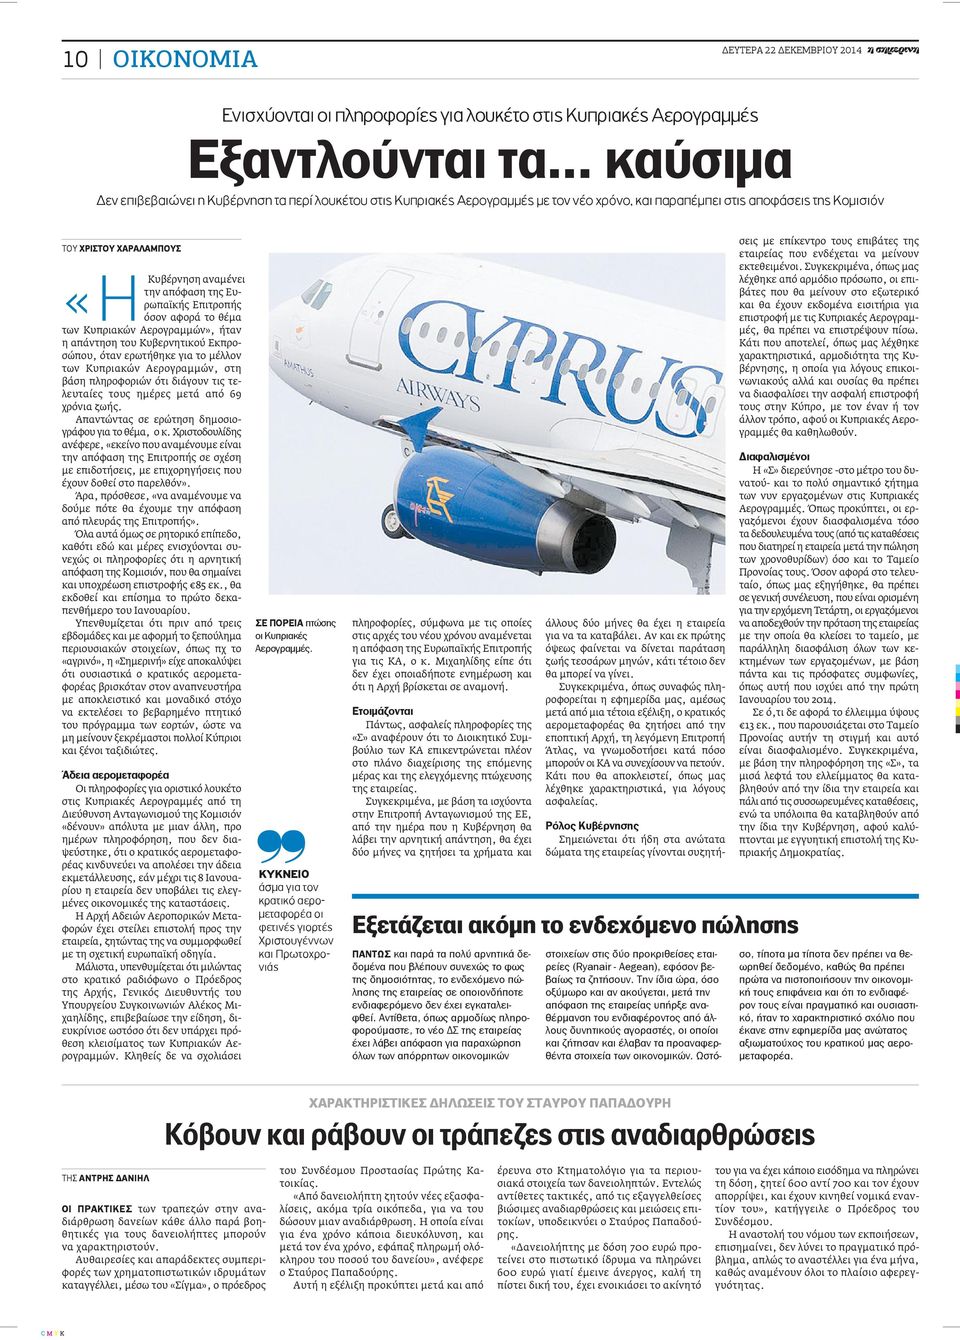 Ευρωπαϊκής Επιτροπής «ΗΚυβέρνηση όσον αφορά το θέμα των Κυπριακών Αερογραμμών», ήταν η απάντηση του Κυβερνητικού Εκπροσώπου, όταν ερωτήθηκε για το μέλλον των Κυπριακών Αερογραμμών, στη βάση